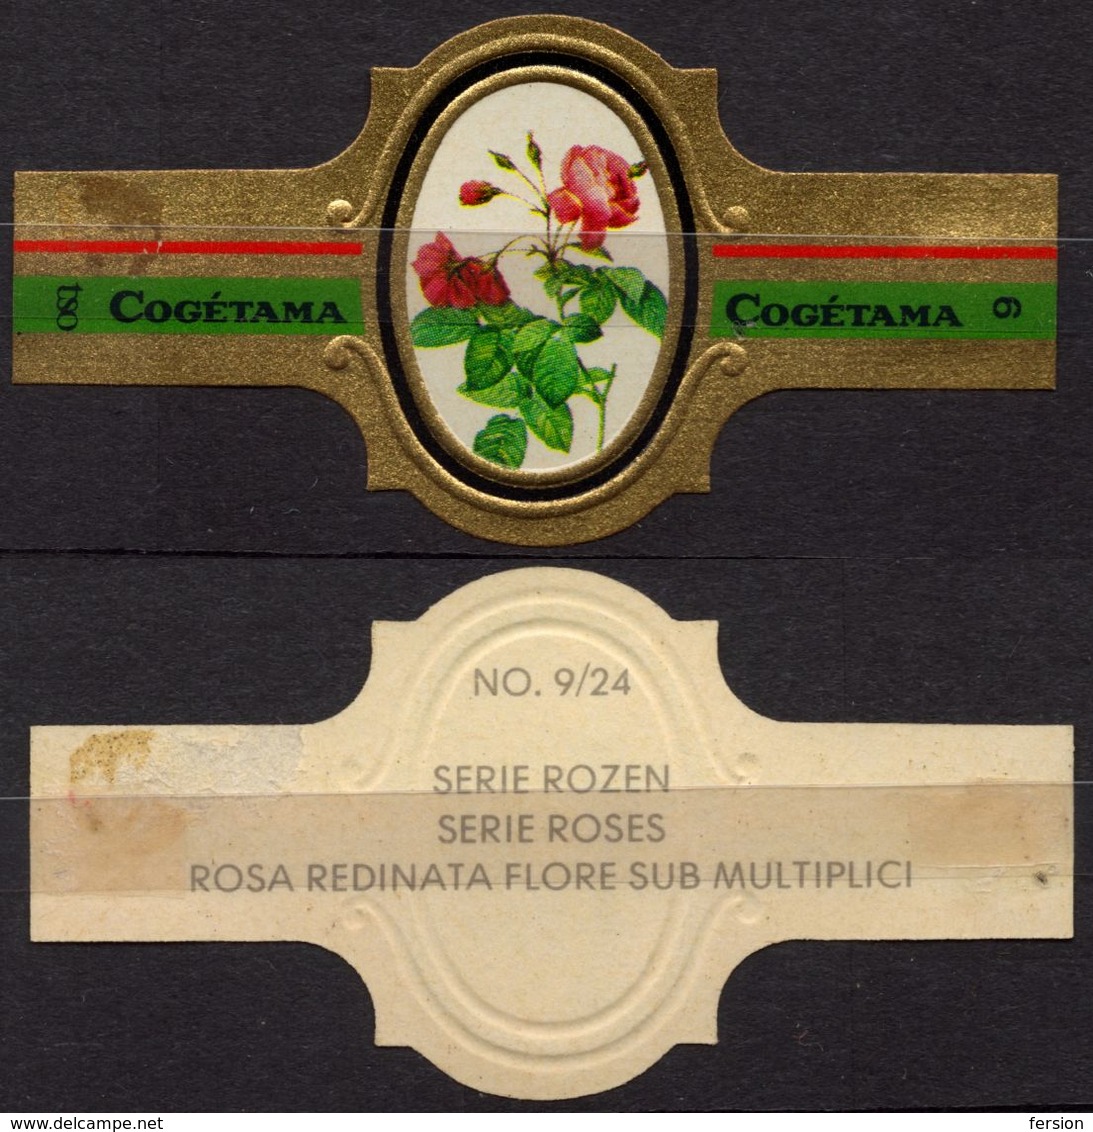 Redinata Flore Sub Multiplici - ROSE ROSES - Netherlands Holland / Cogétama / CIGAR CIGARS Label Vignette - Labels